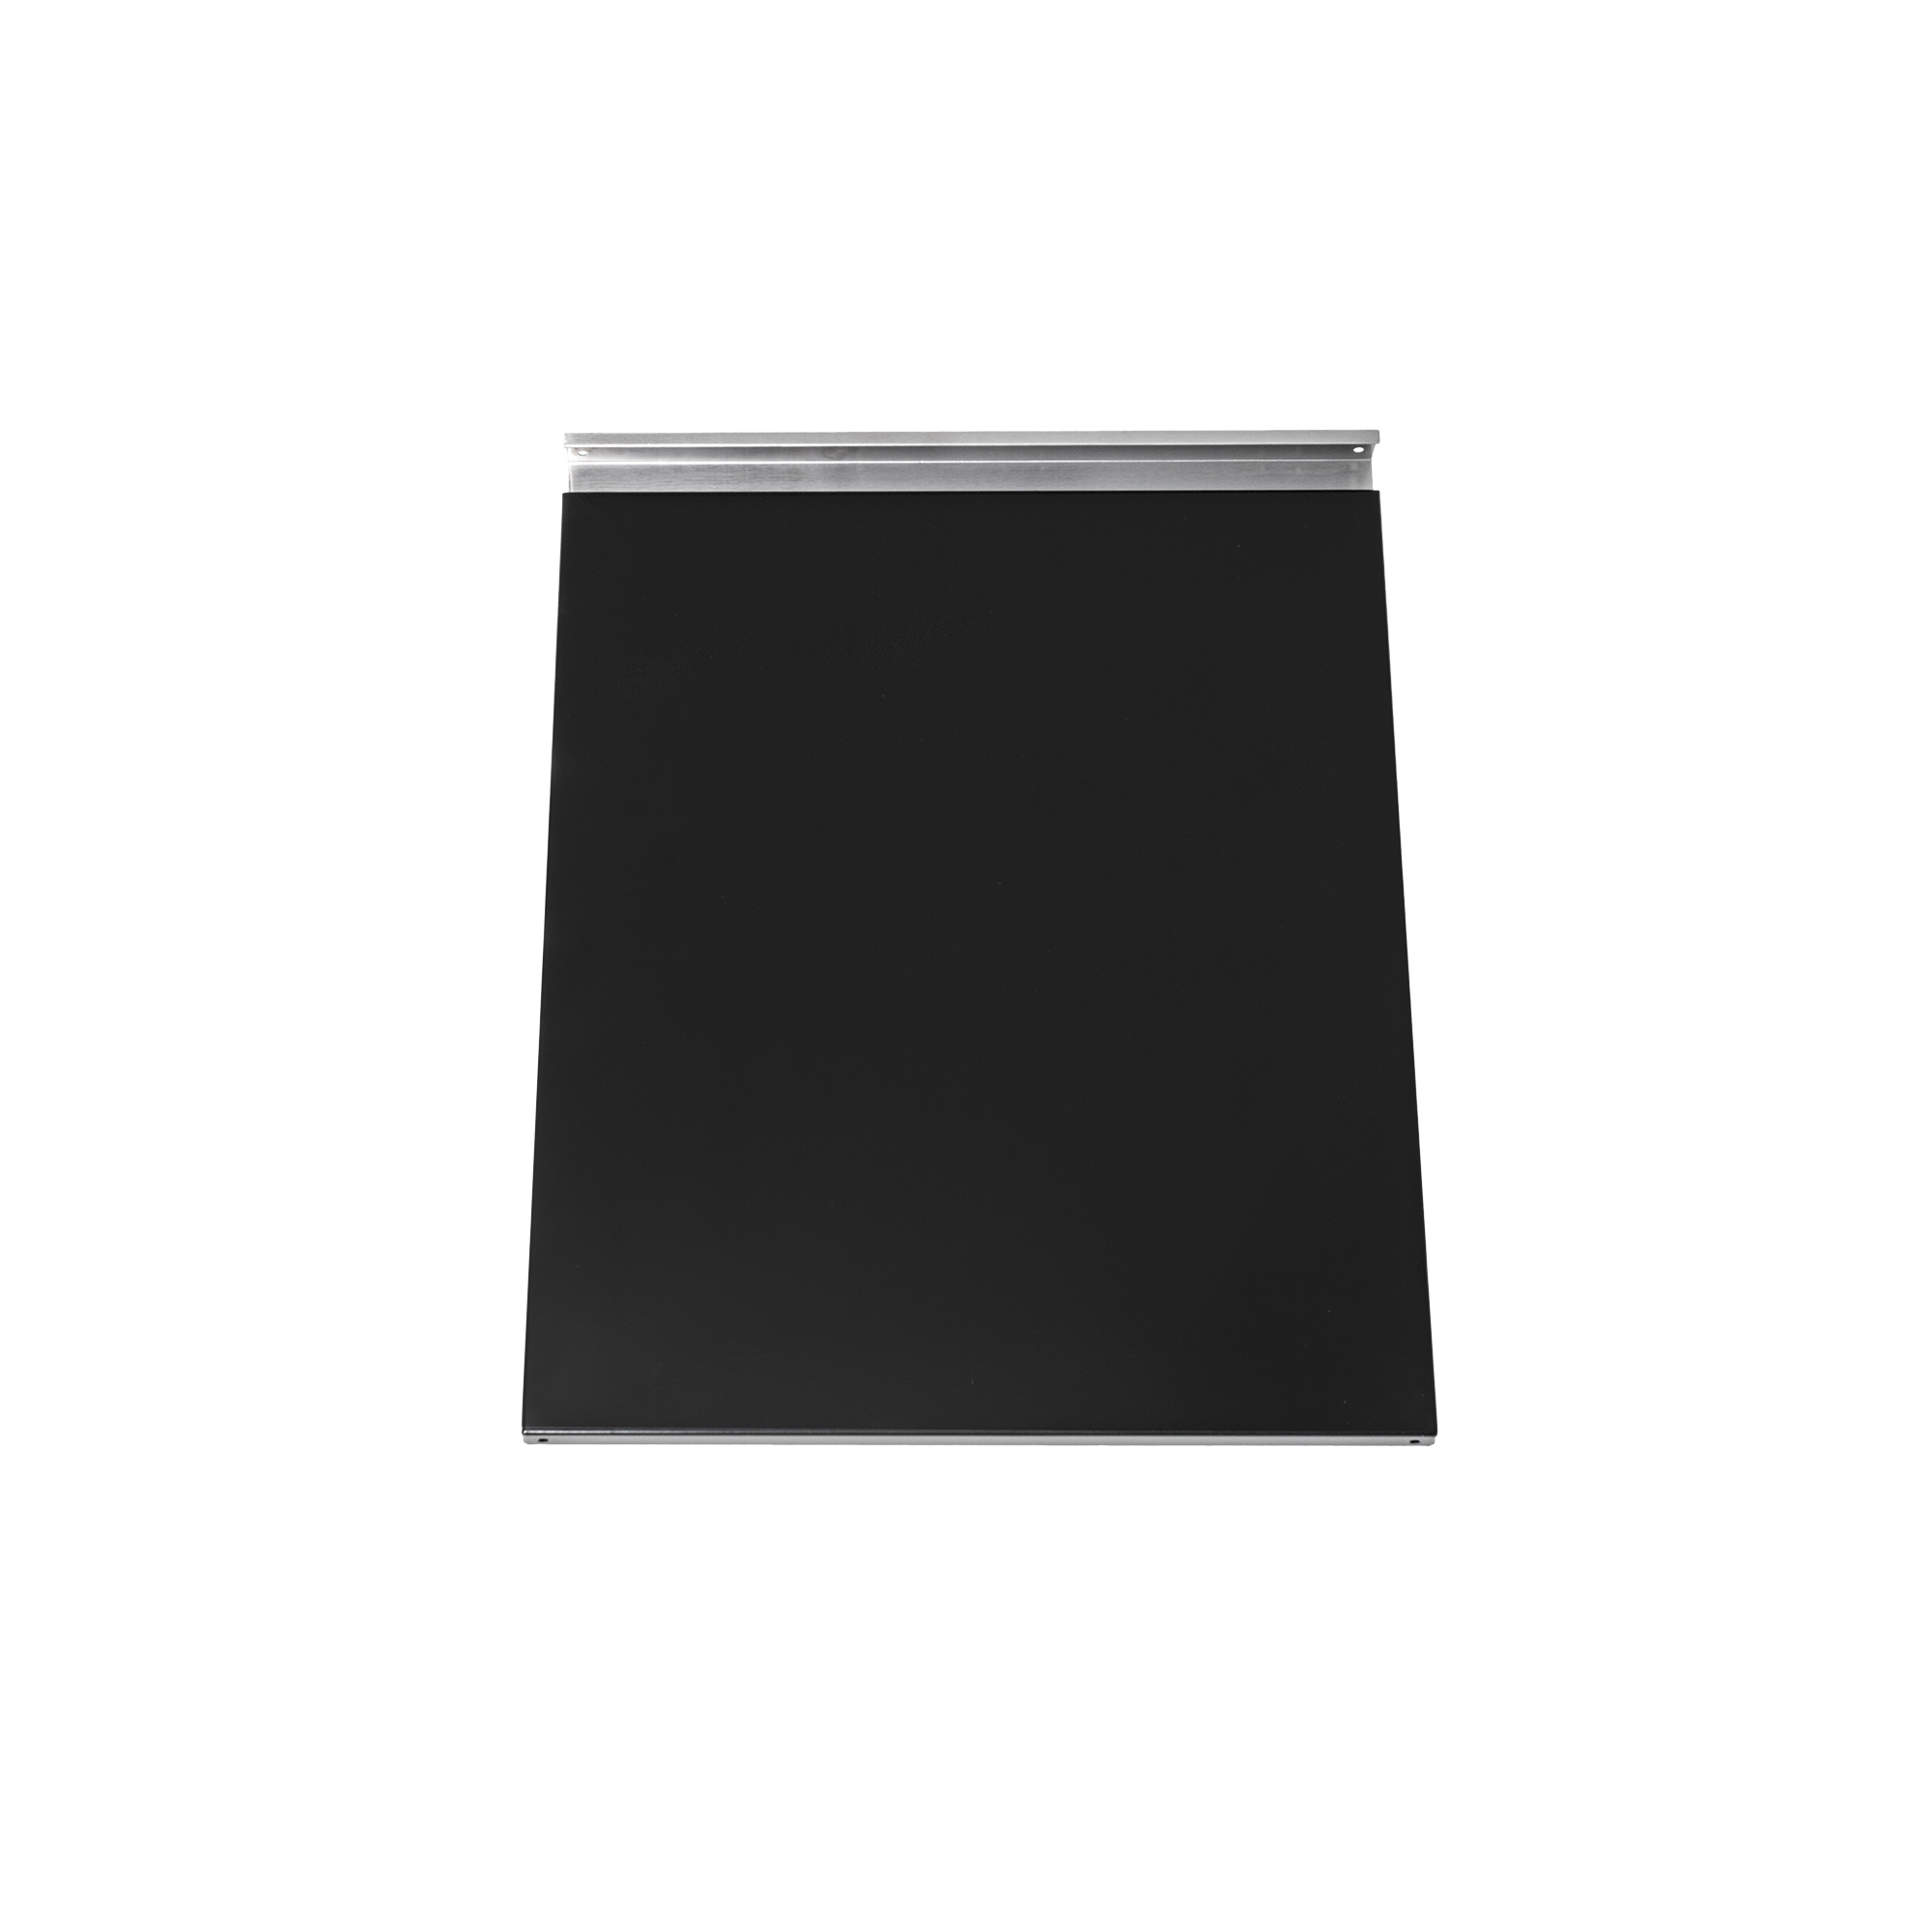 Türe schwarz links/rechts, inkl. Griff (Videro G6)